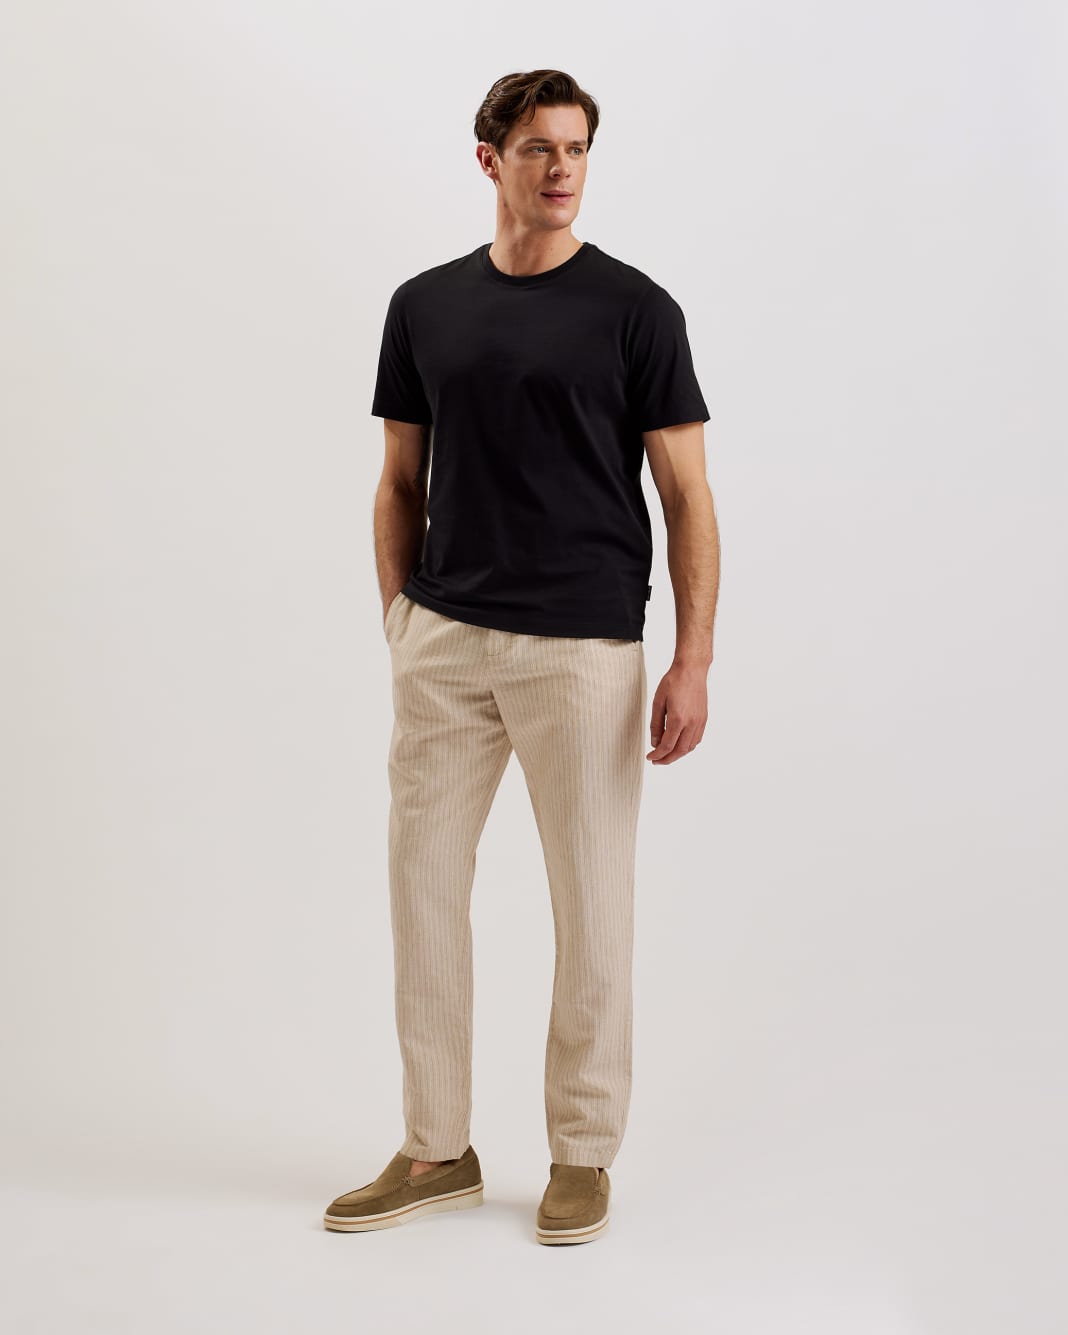 테드베이커 Tedbaker Short Sleeve Regular Fit Plain T-shirt,Black